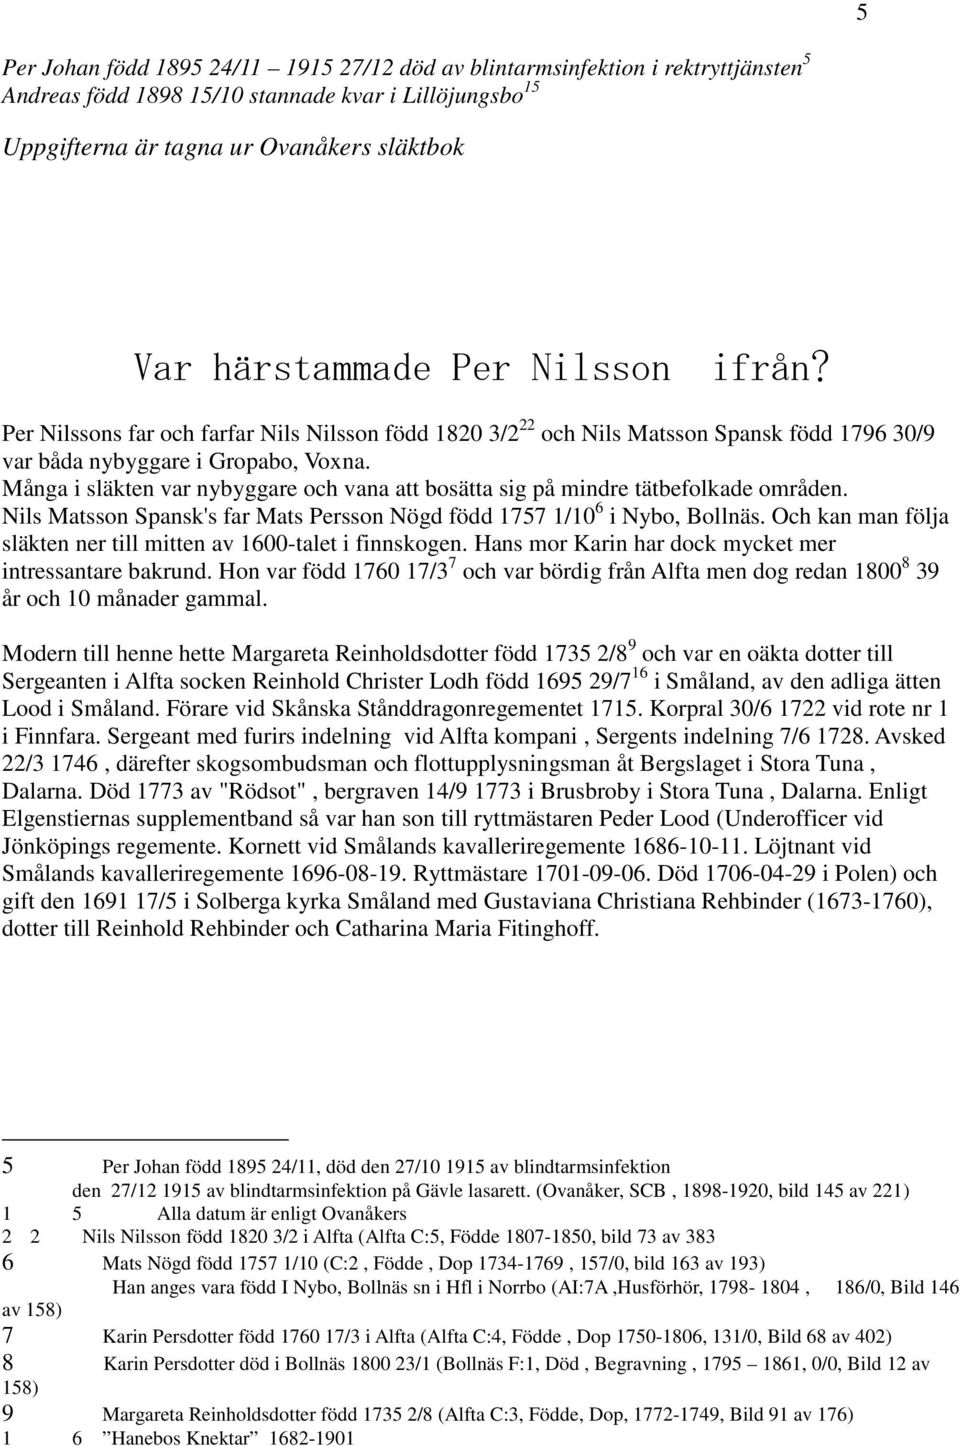 Många i släkten var nybyggare och vana att bosätta sig på mindre tätbefolkade områden. Nils Matsson Spansk's far Mats Persson Nögd född 1757 1/10 6 i Nybo, Bollnäs.